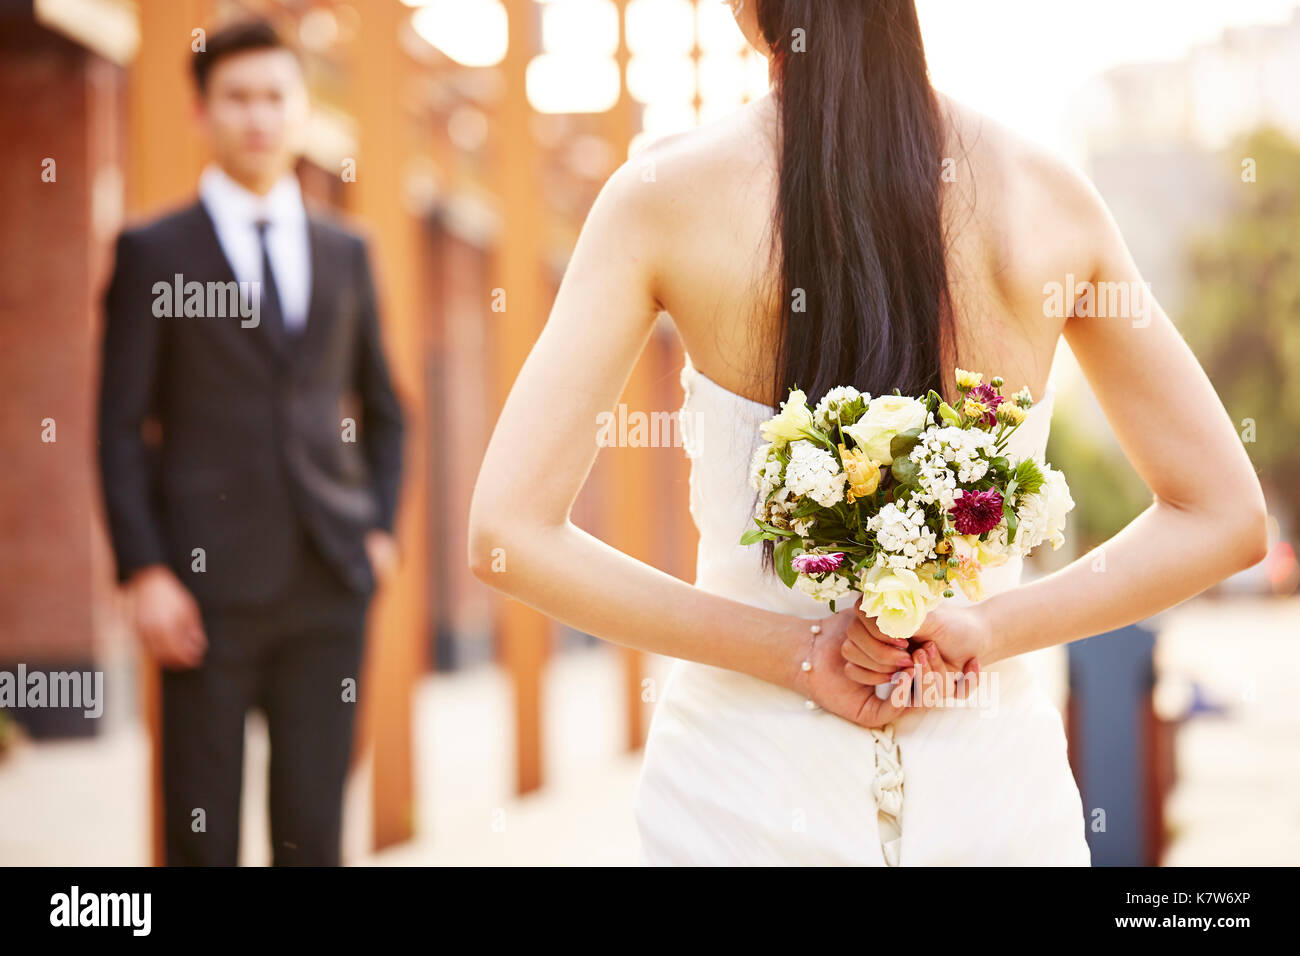 Asiatische liebenden Braut und Bräutigam am Hochzeitstag. Stockfoto